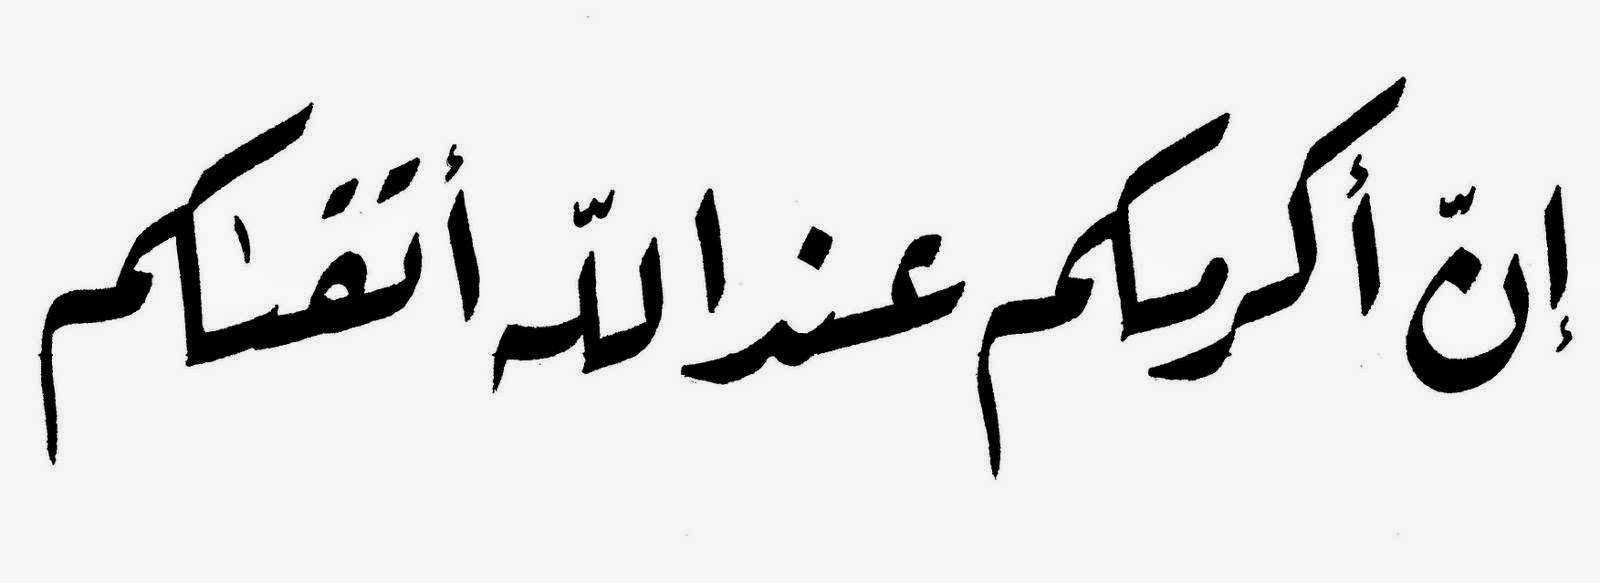 Kaligrafi Sa adatuddarain Macam macam Bentuk Kaligrafi Arab